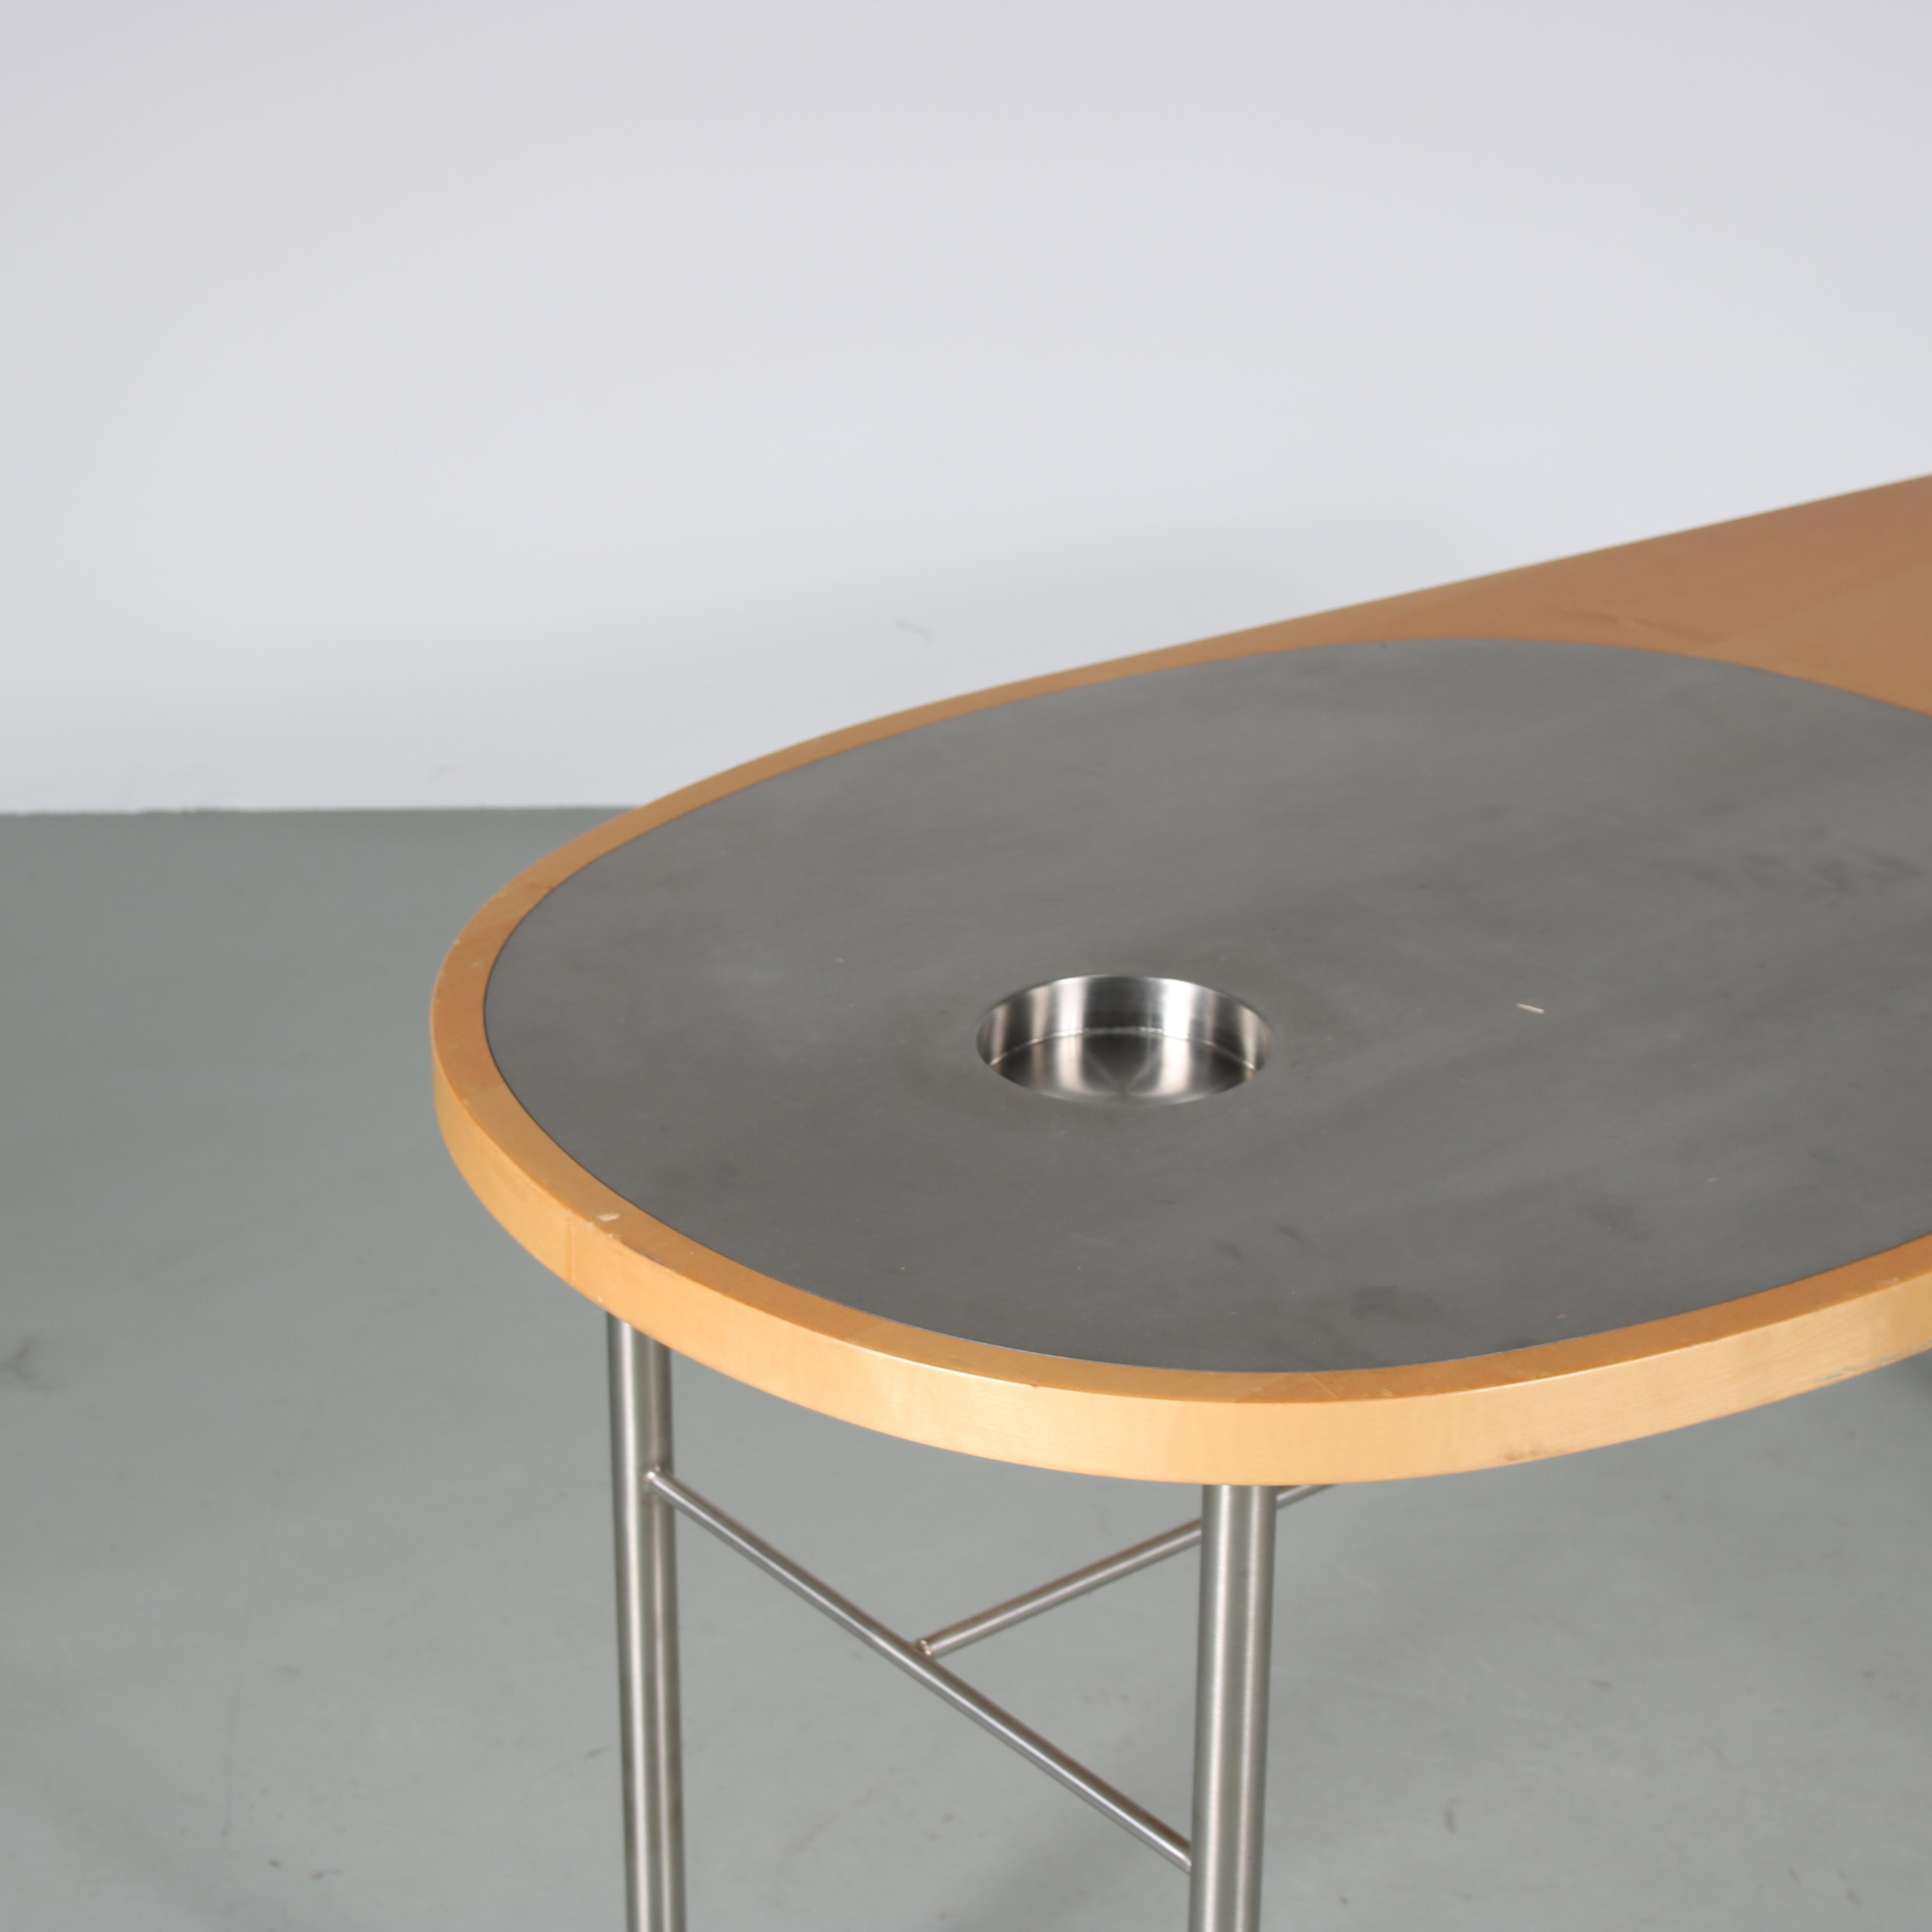 Contemporary Finn Juhl “Ross” Coffee Table for House of Finn Juhl, Denmark, 2000